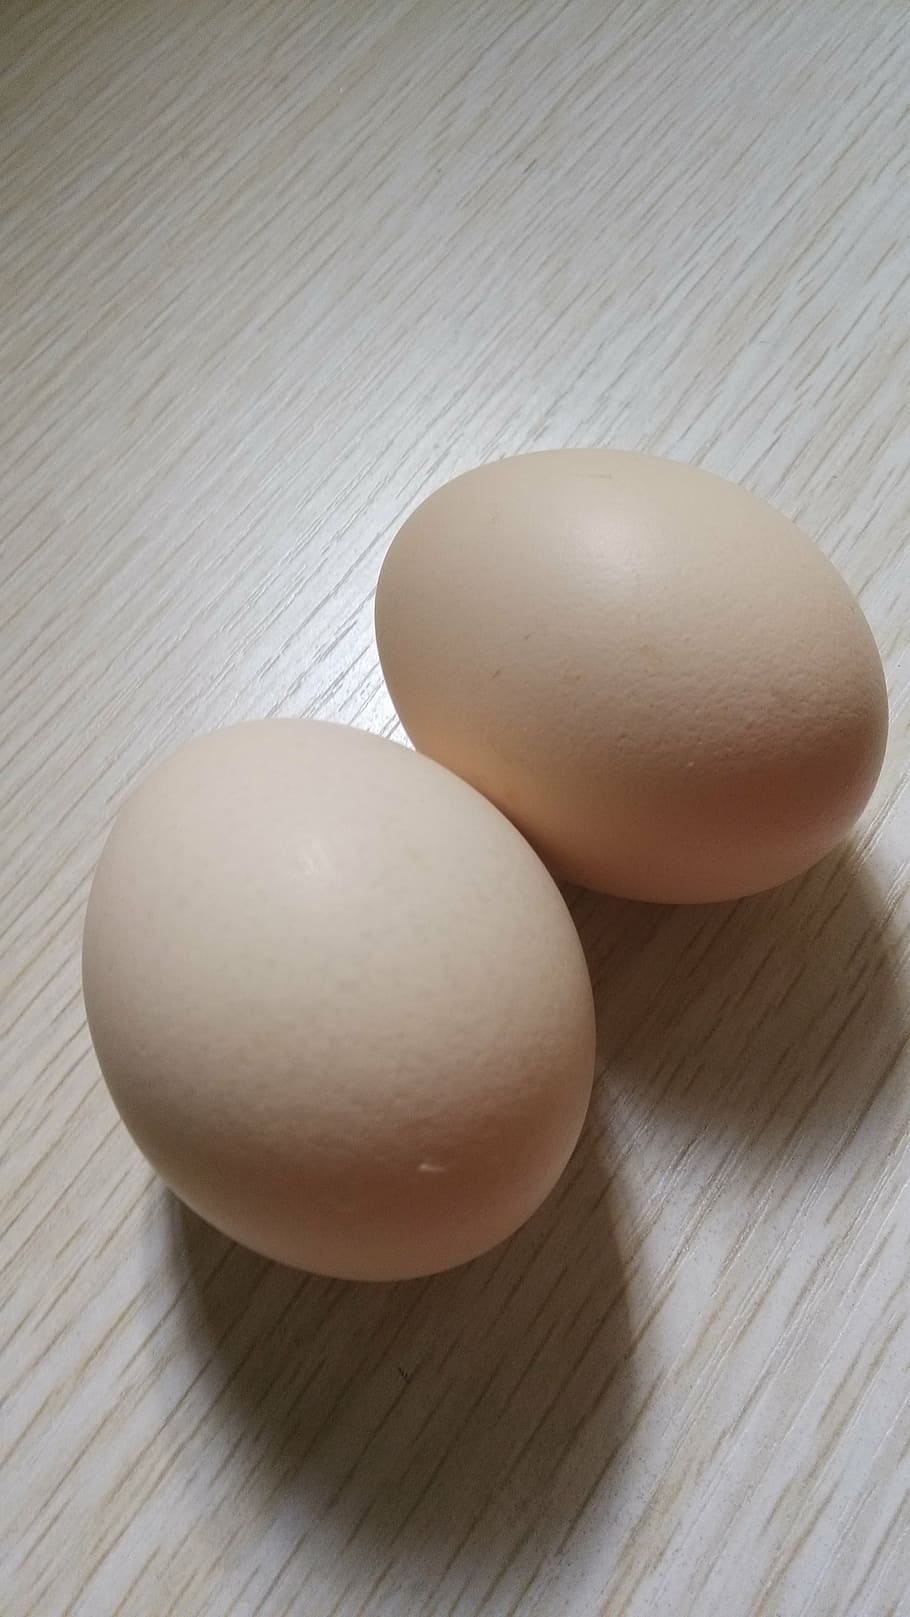 Two eggs. Яйцо. Яйцо куриное. Два яйца. Яйцо картинка.